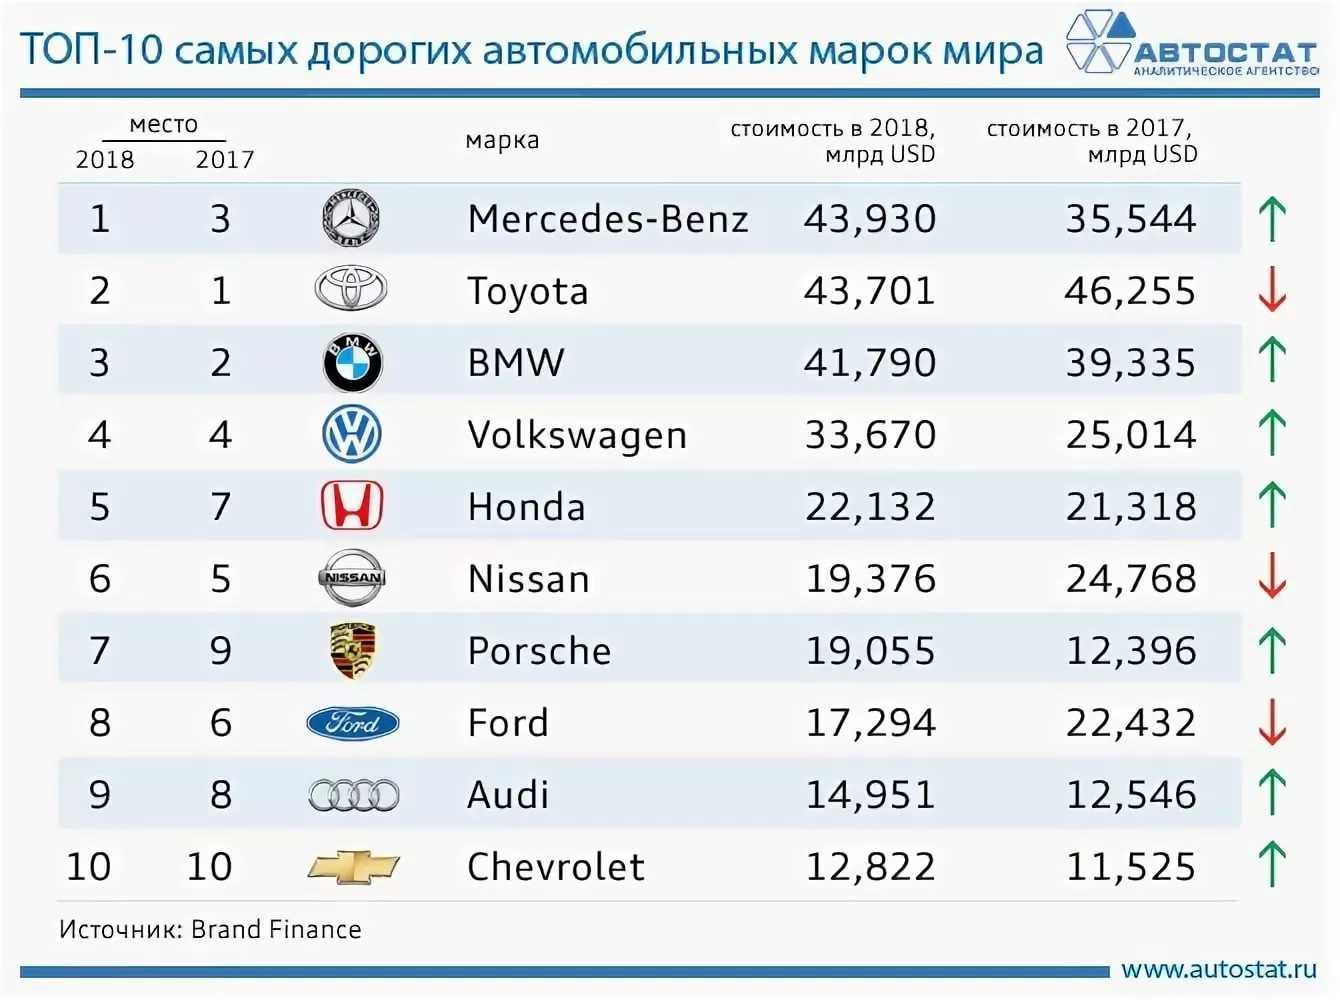 Самые крупные автомобильные компании - топ 10